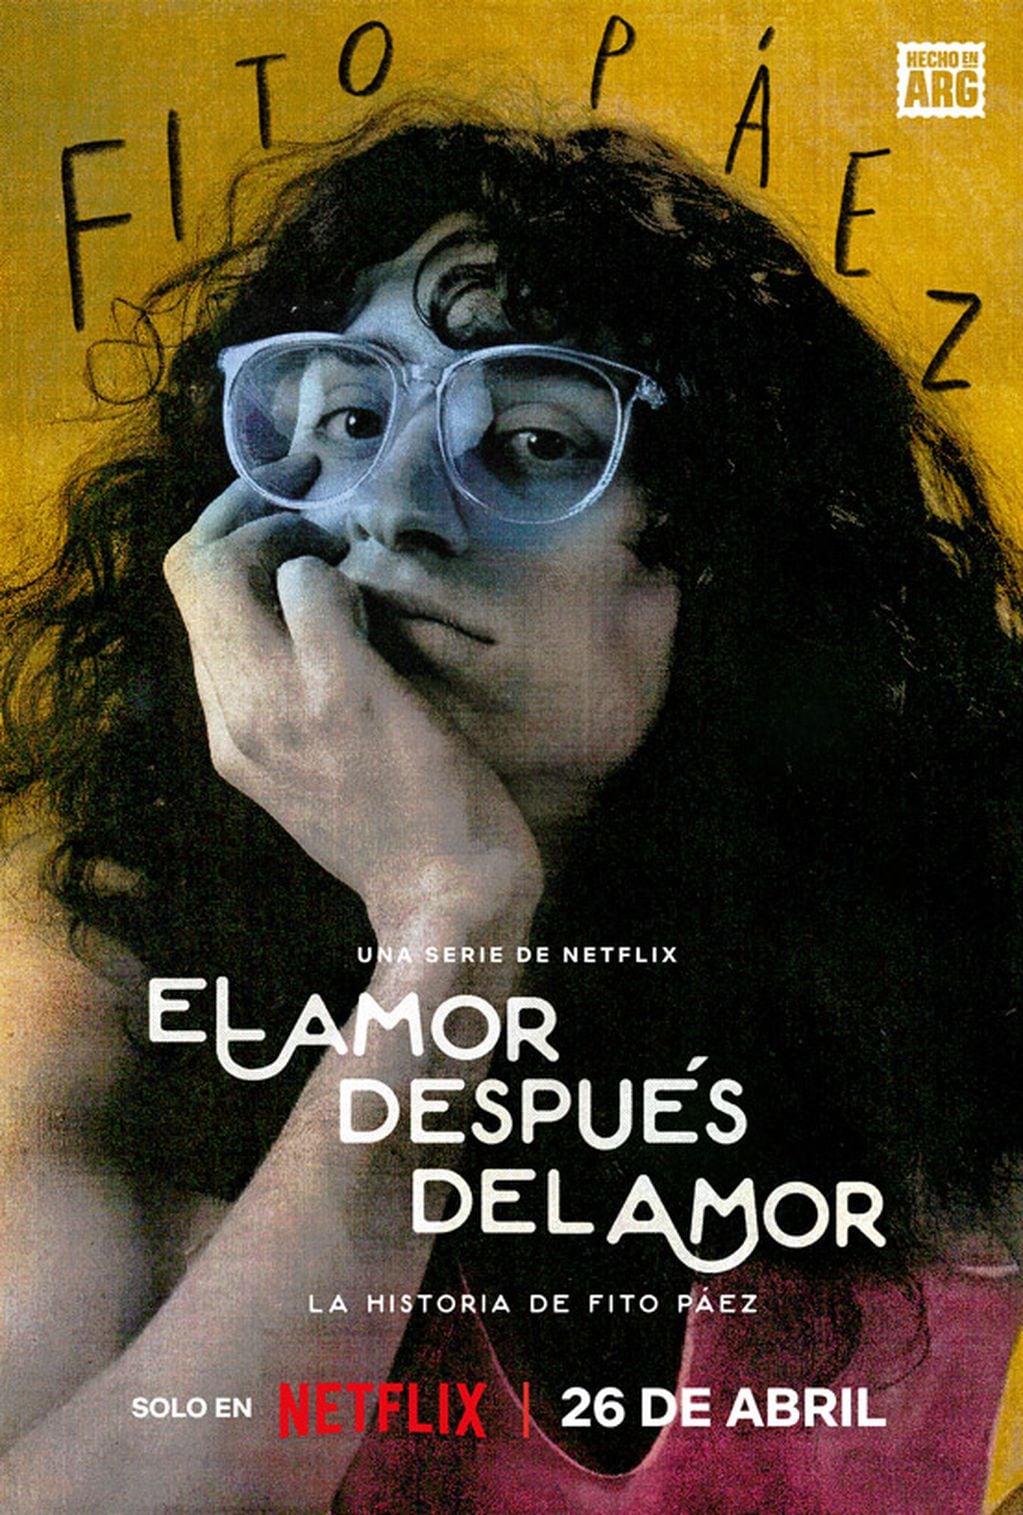 El póster de "El amor después del amor", la serie biográfica de Fito Páez que se verá por Netflix.